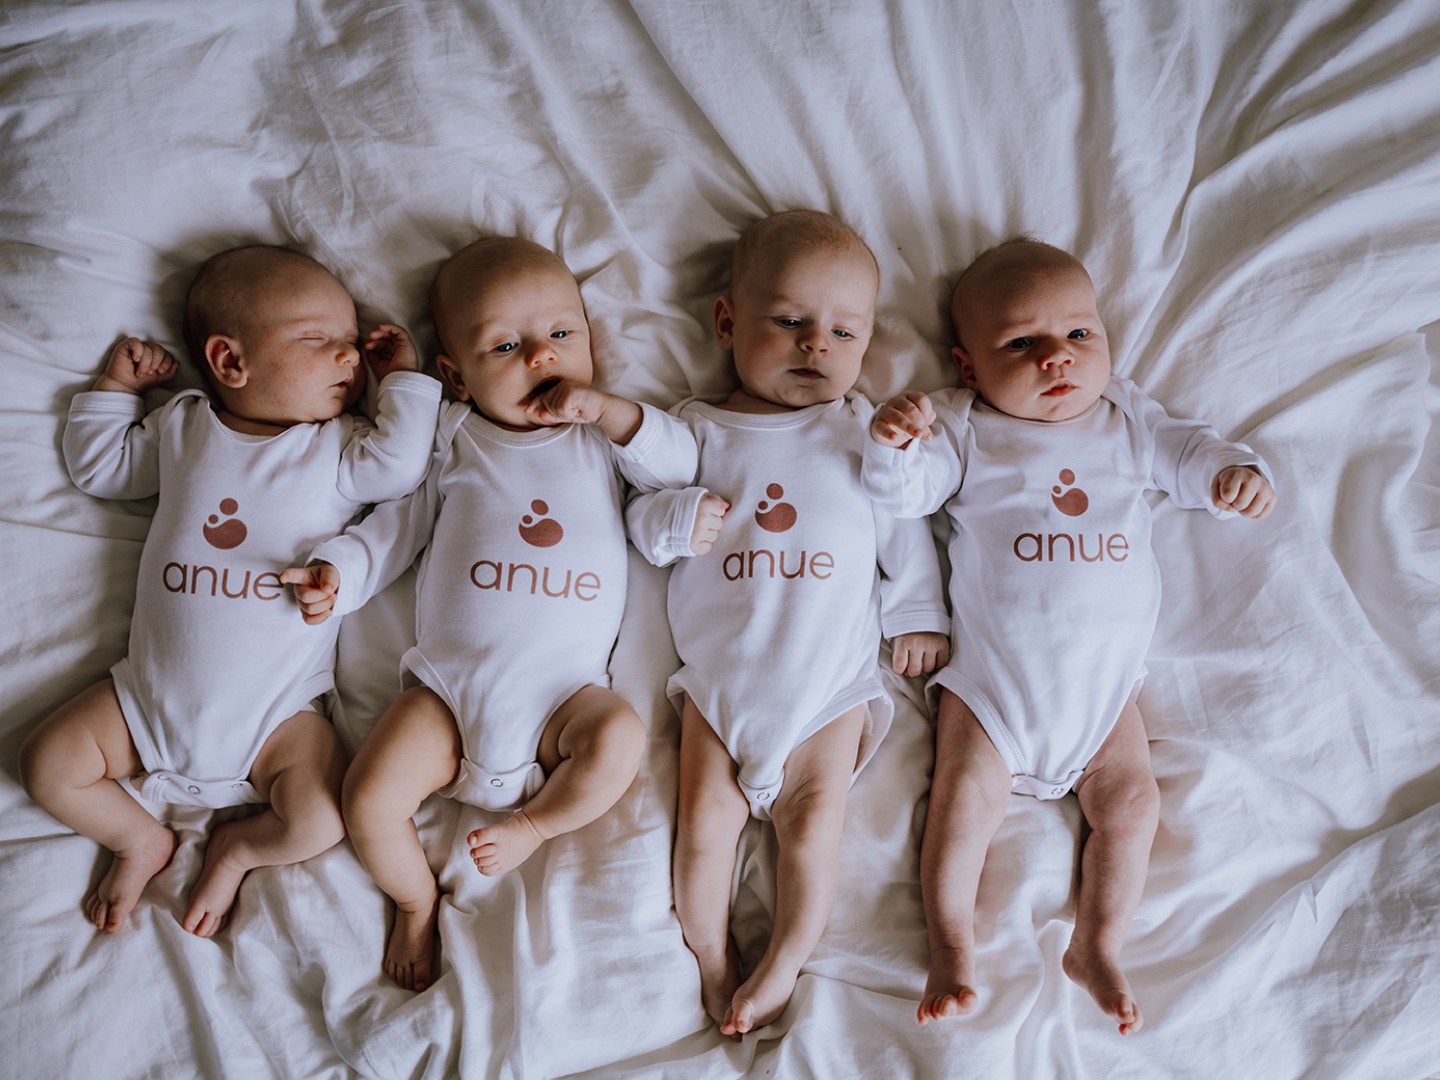 Fire babyer i en seng med bodyer merket med Anue